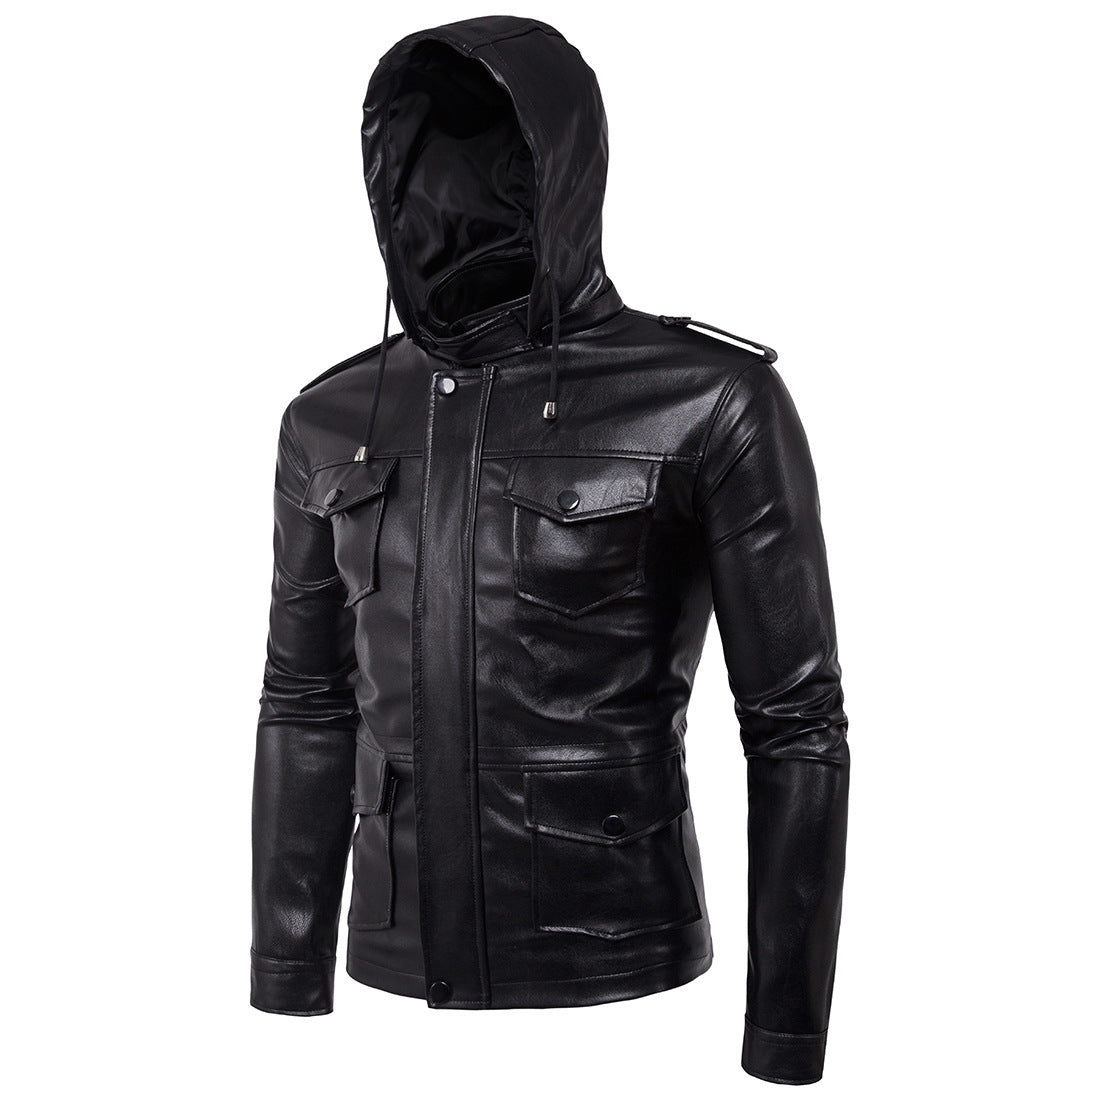 Jacheta de motociclist pentru barbati, din piele ecologica, jacheta cu gluga detasabila, model creativ, haina potrivita pentru sezonul de iarna